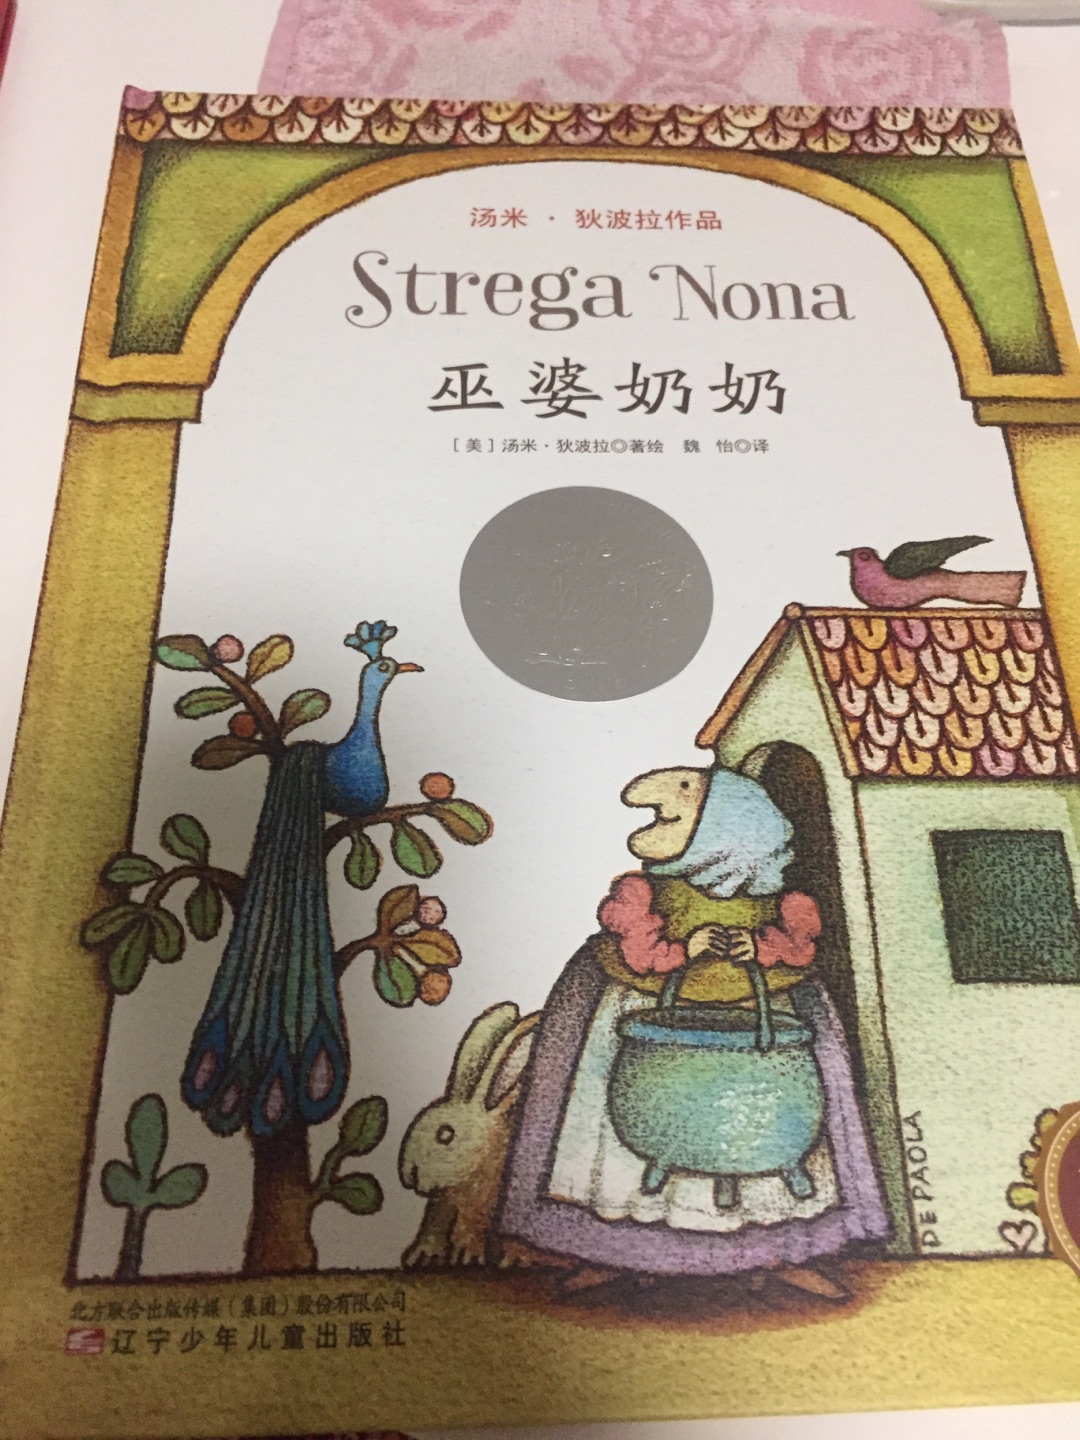 绘本是中文版的，硬皮，里面字有点儿小，插图很可爱，故事很有意思，有启发教育意义，孩子喜欢听。